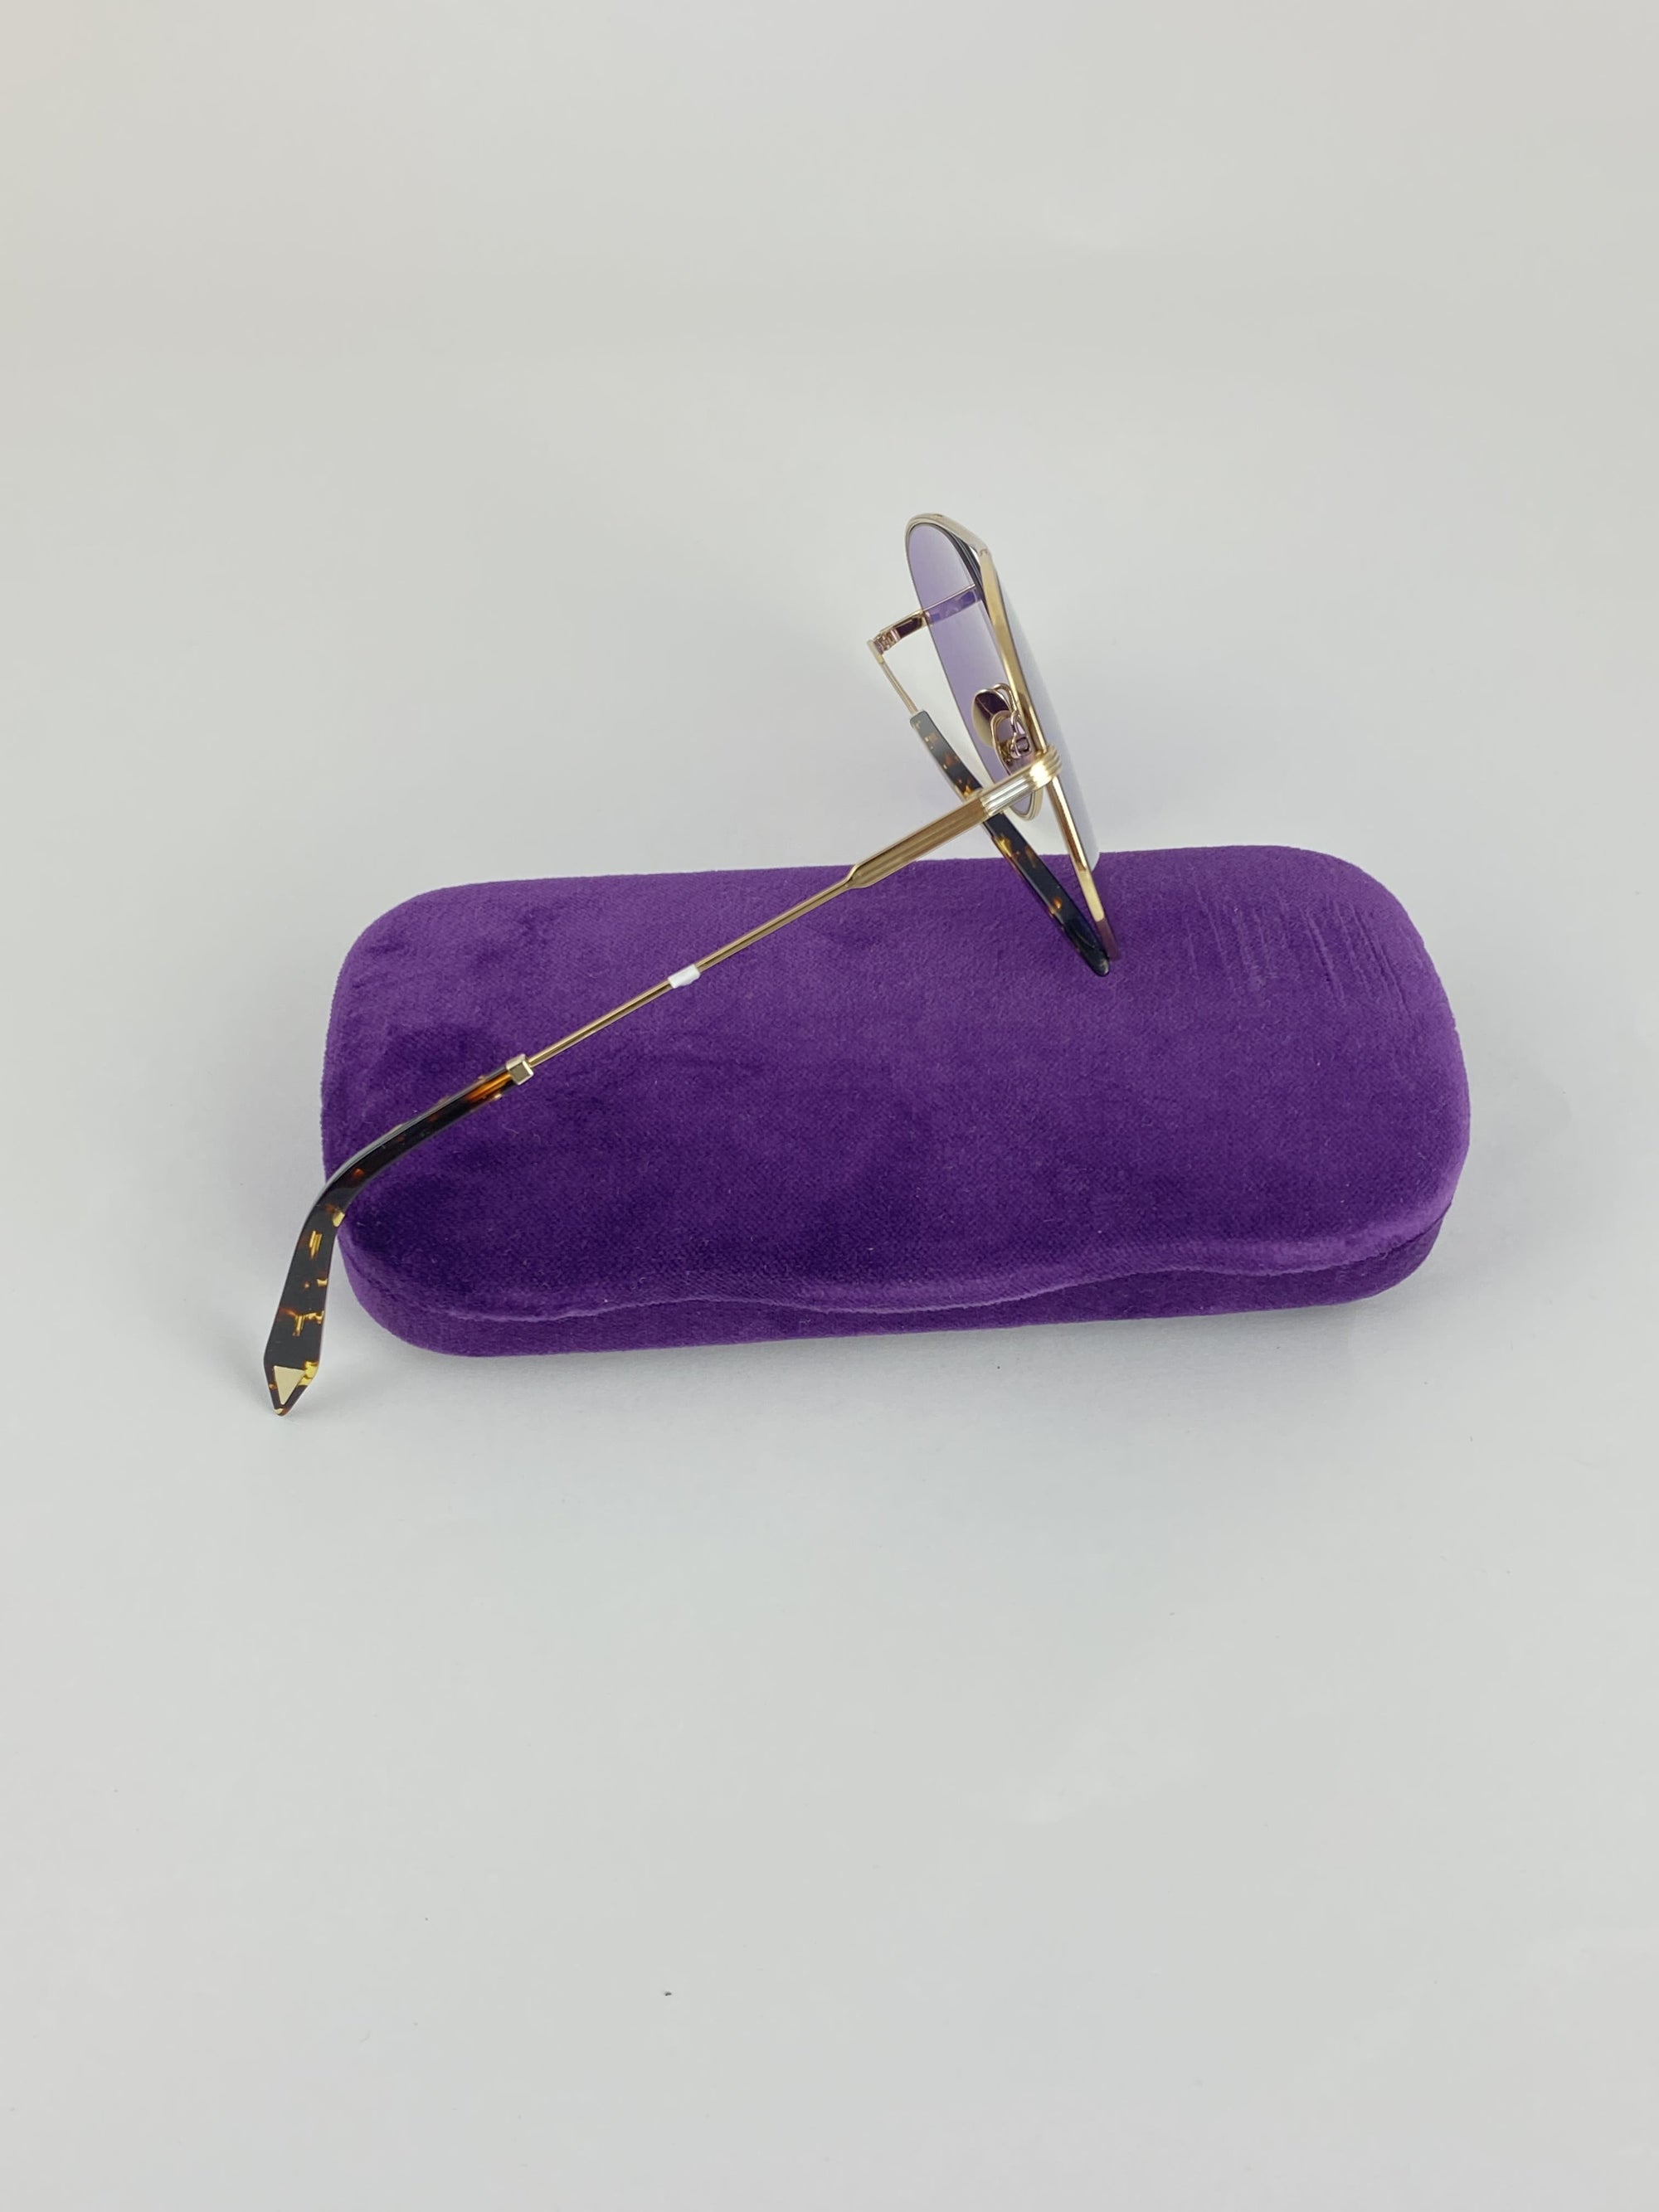 Produktbild der Victoria Beckham Pilot Sunglasses purple von der Seite vor weißem Hintergrund.